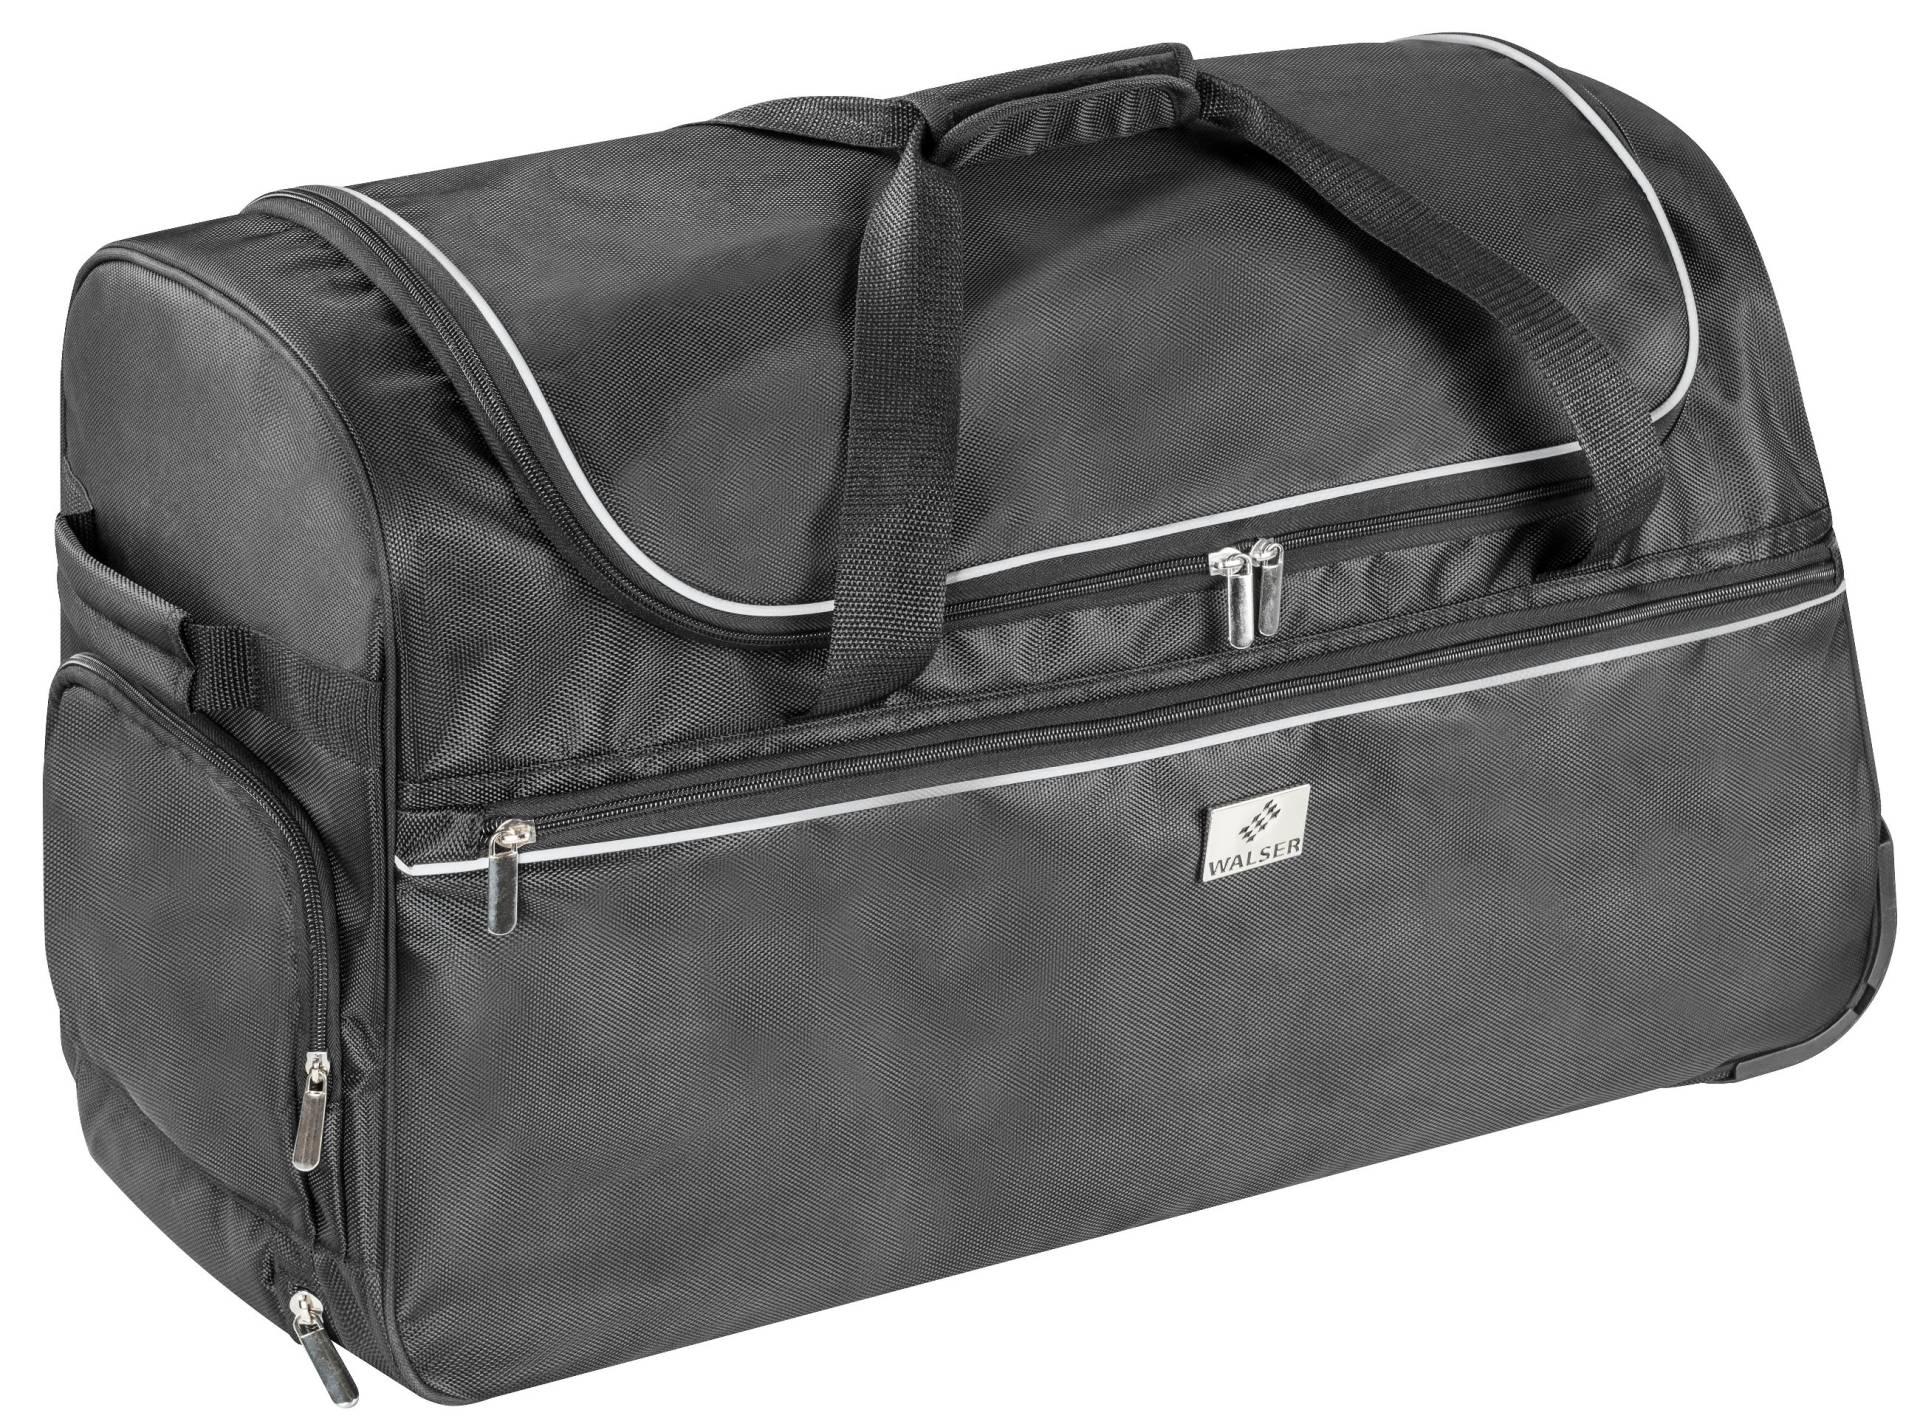 Carbags Trolley Bag, Reisetasche, Reisetrolley 95L - 60x30x45 cm von WALSER